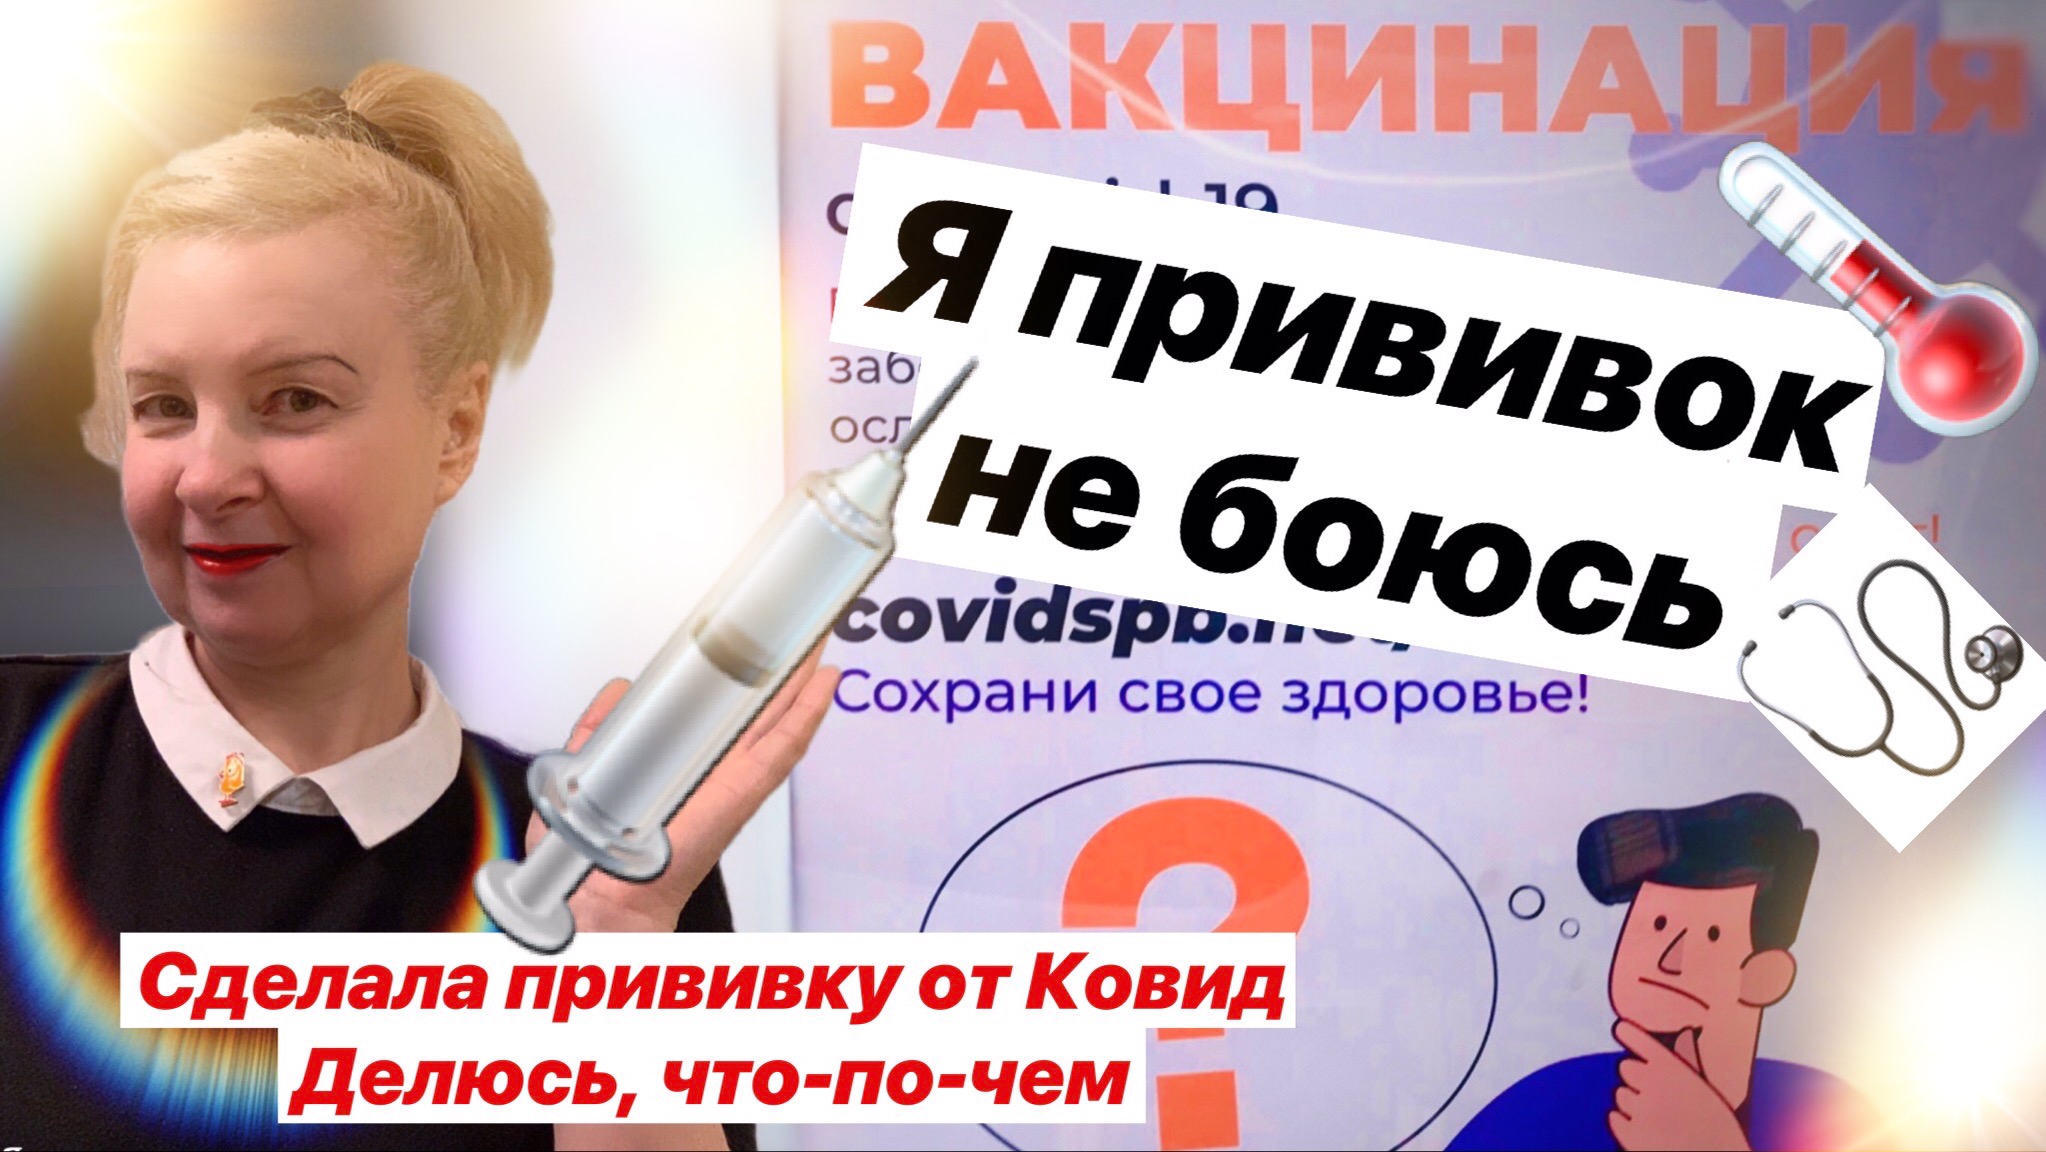 Прививка от коронавируса / какой вакциной привился Путин, сертификаты этой прививки признали в ЕС